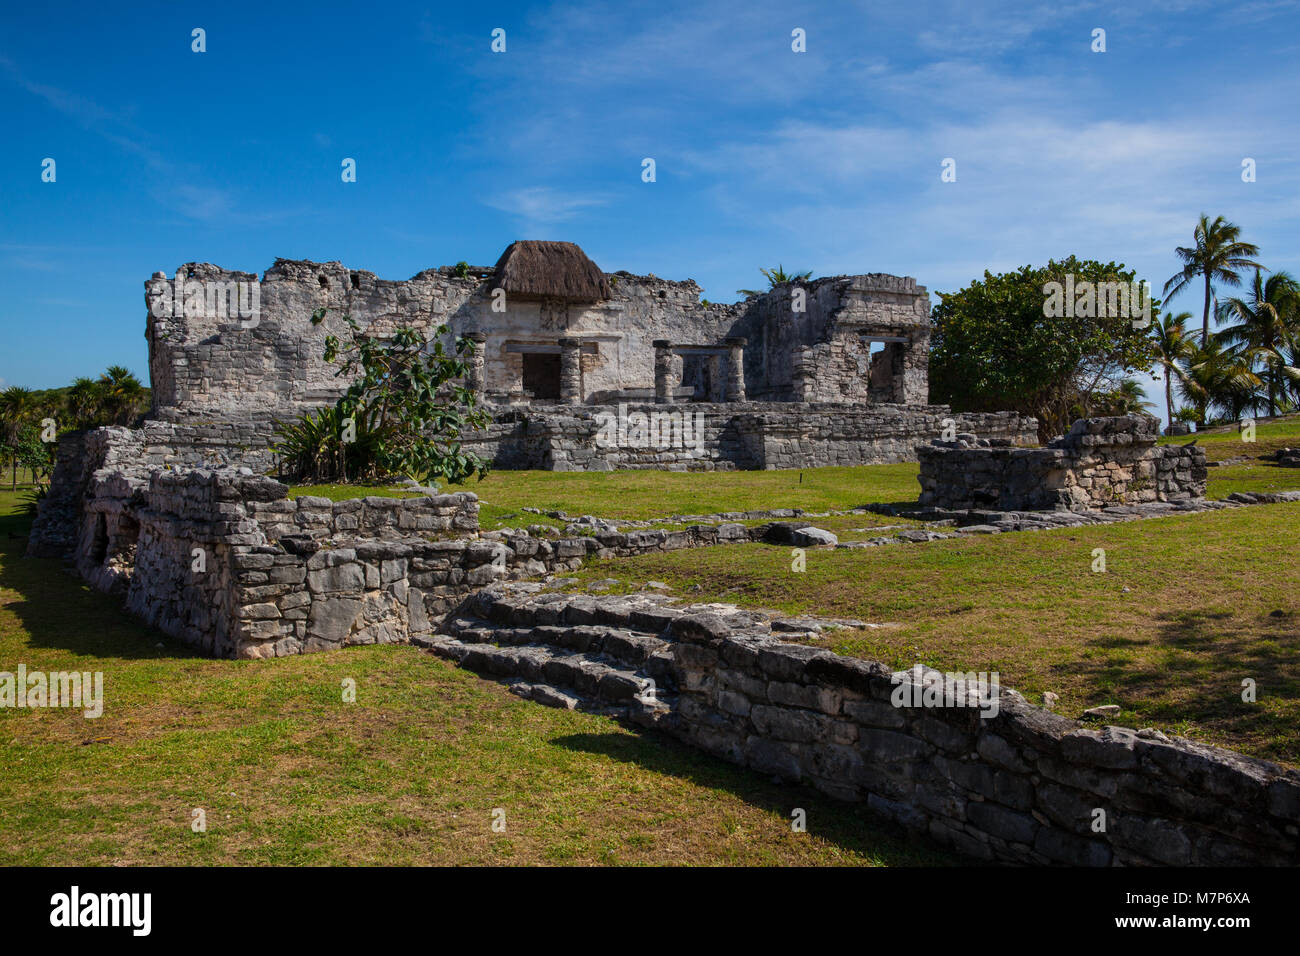 Majestätische Ruinen in Tulum. Tulum ist ein Ferienort auf Mexicos karibischen Küste. Aus dem 13. Jahrhundert, ummauerten Maya archäologische Stätte Tulum National Park o Stockfoto